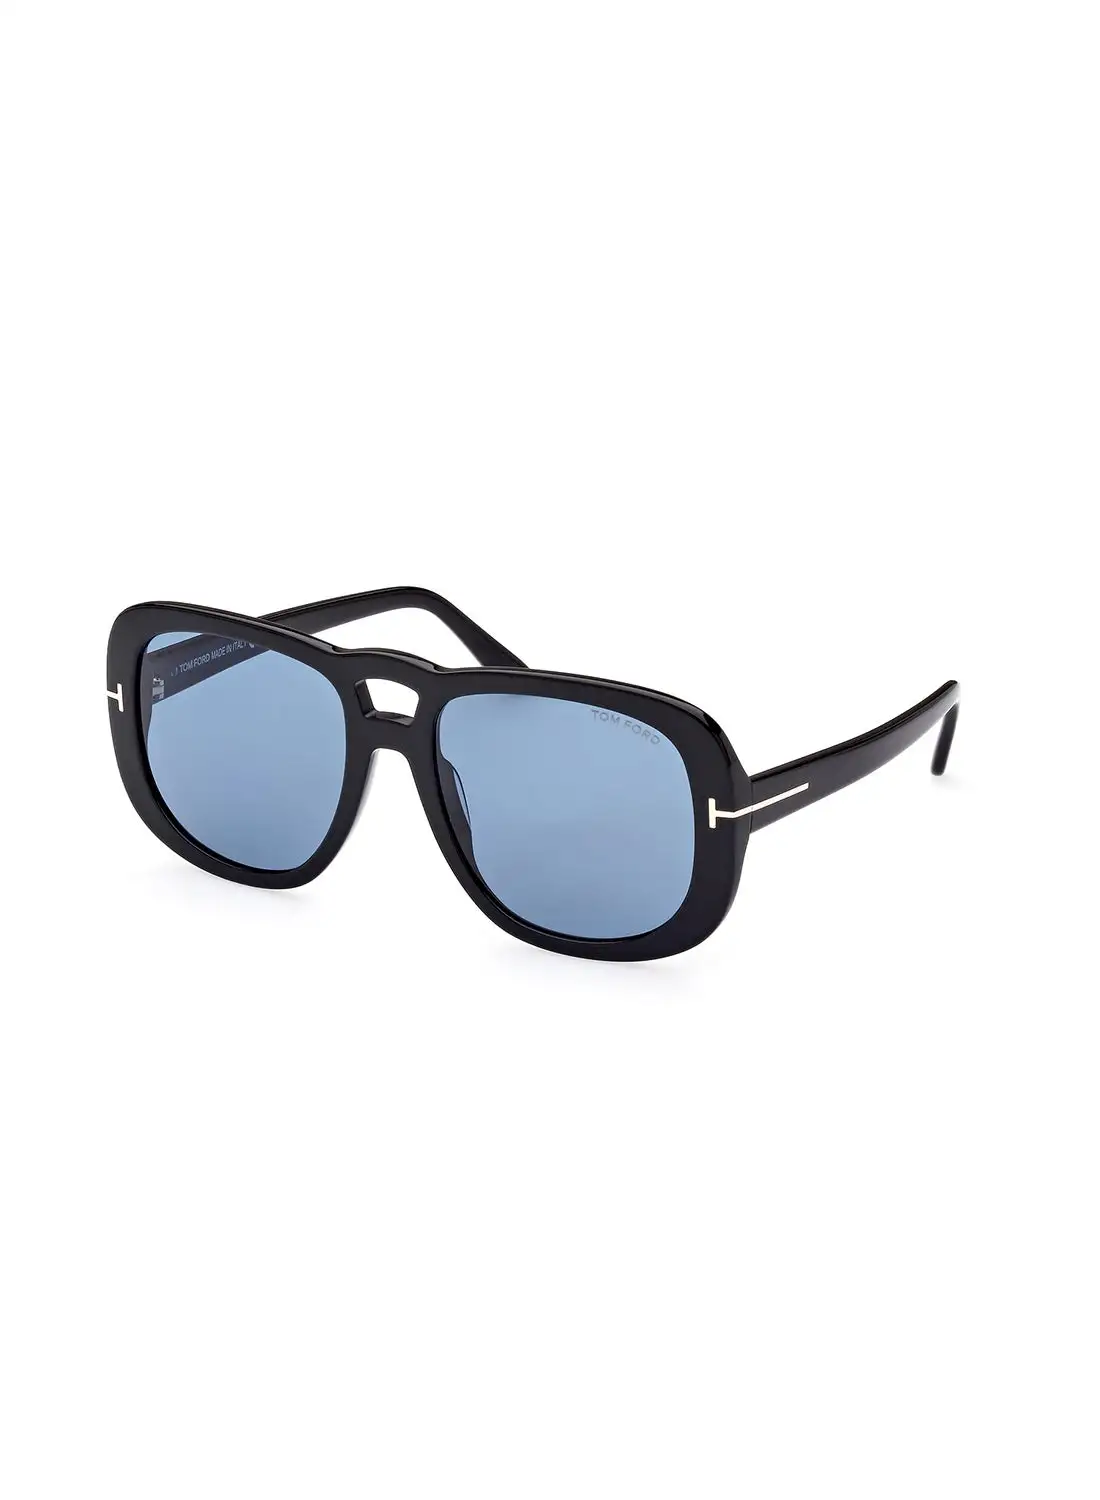 TOM FORD Women's UV Protection Navigator Sunglasses - FT101201V56 - Lens Size: 56 Mm